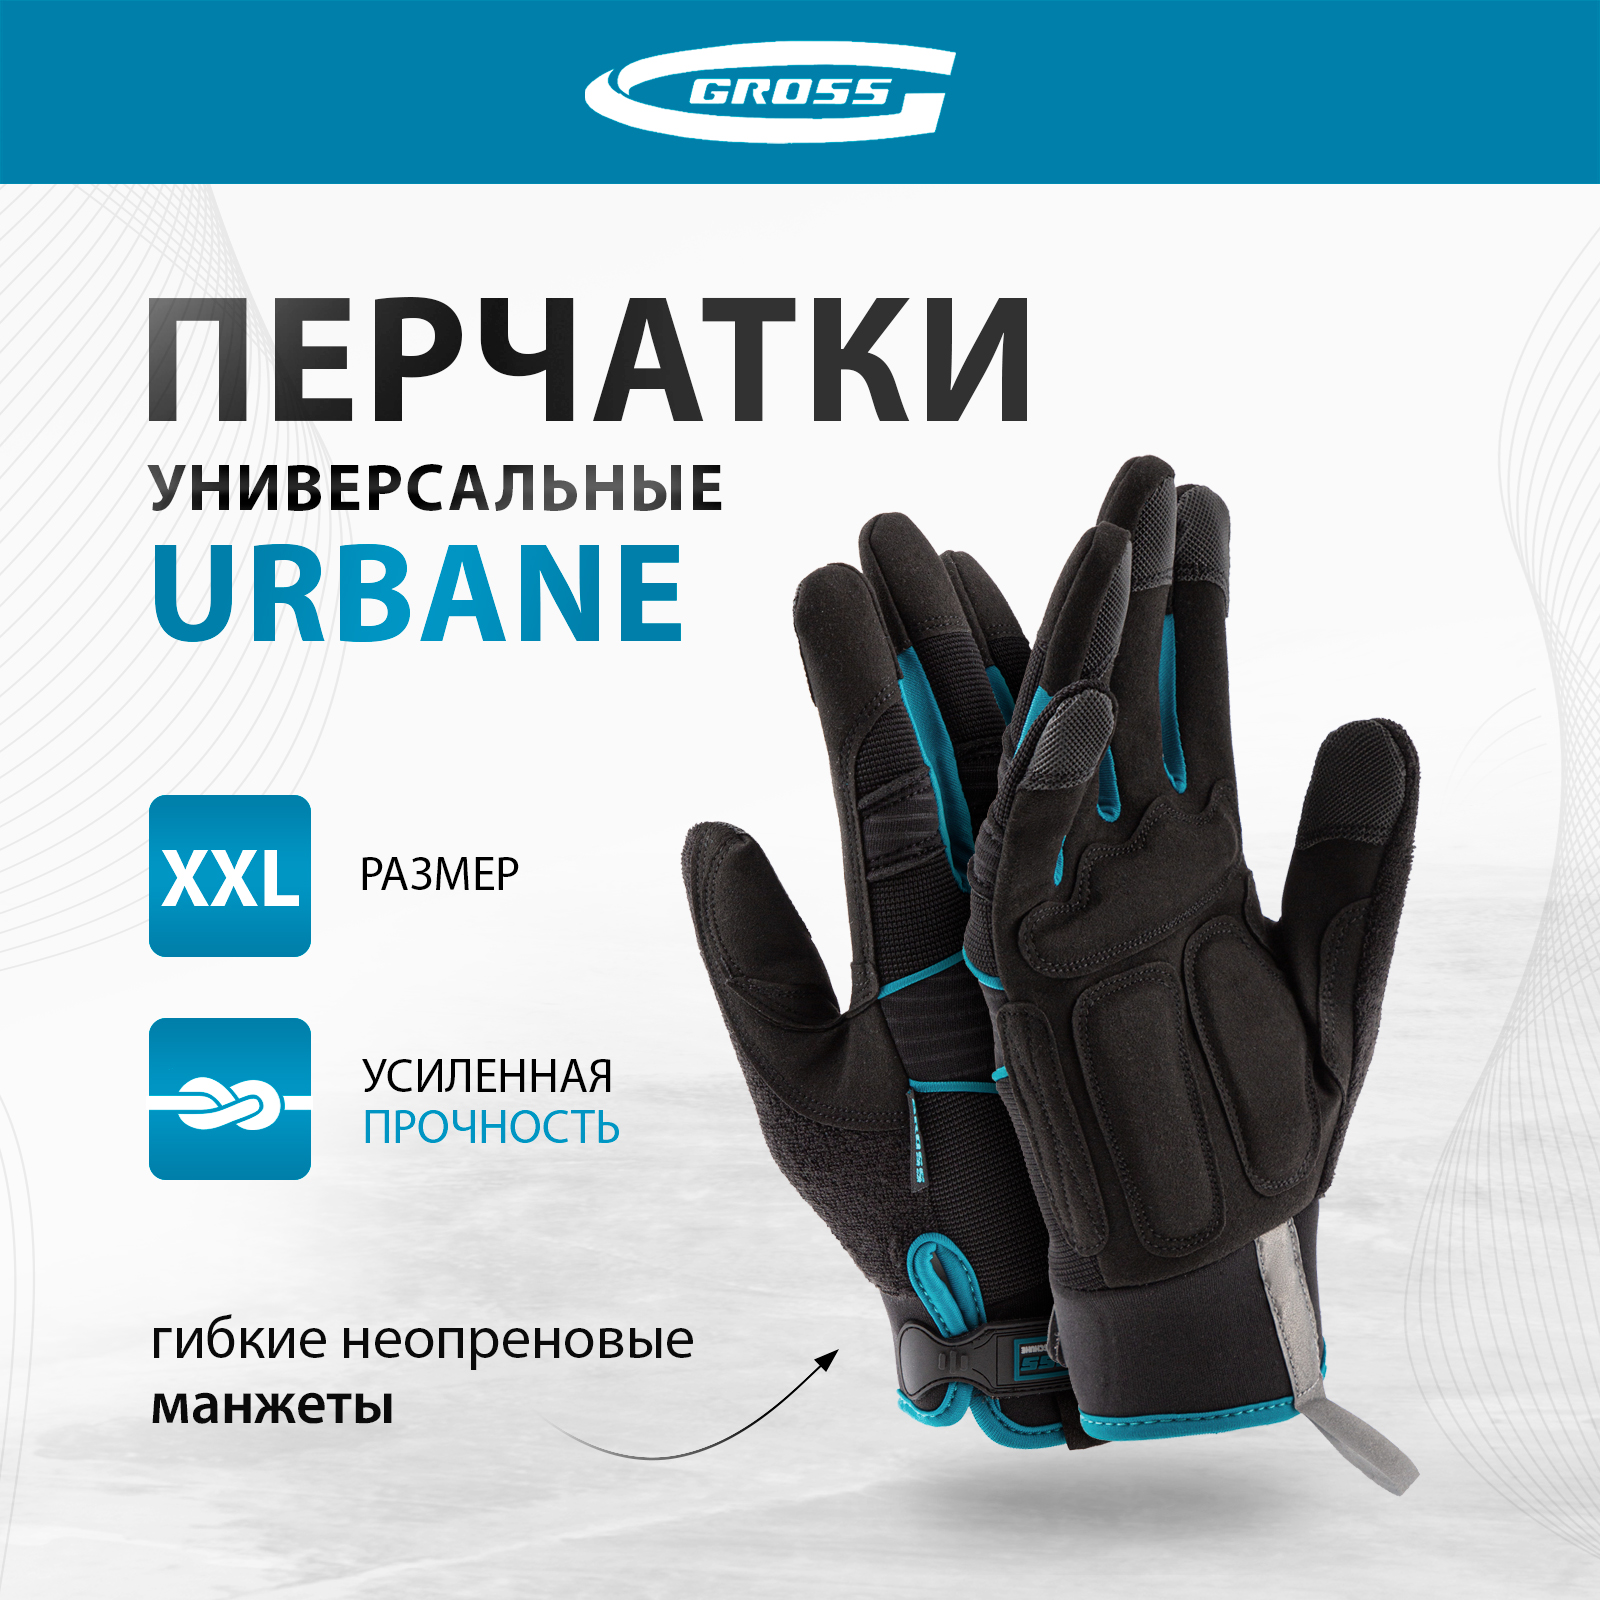 Перчатки универсальные комбинированные GROSS URBANE размер XL (10) 90313 универсальные комбинированные плоскогубцы harden